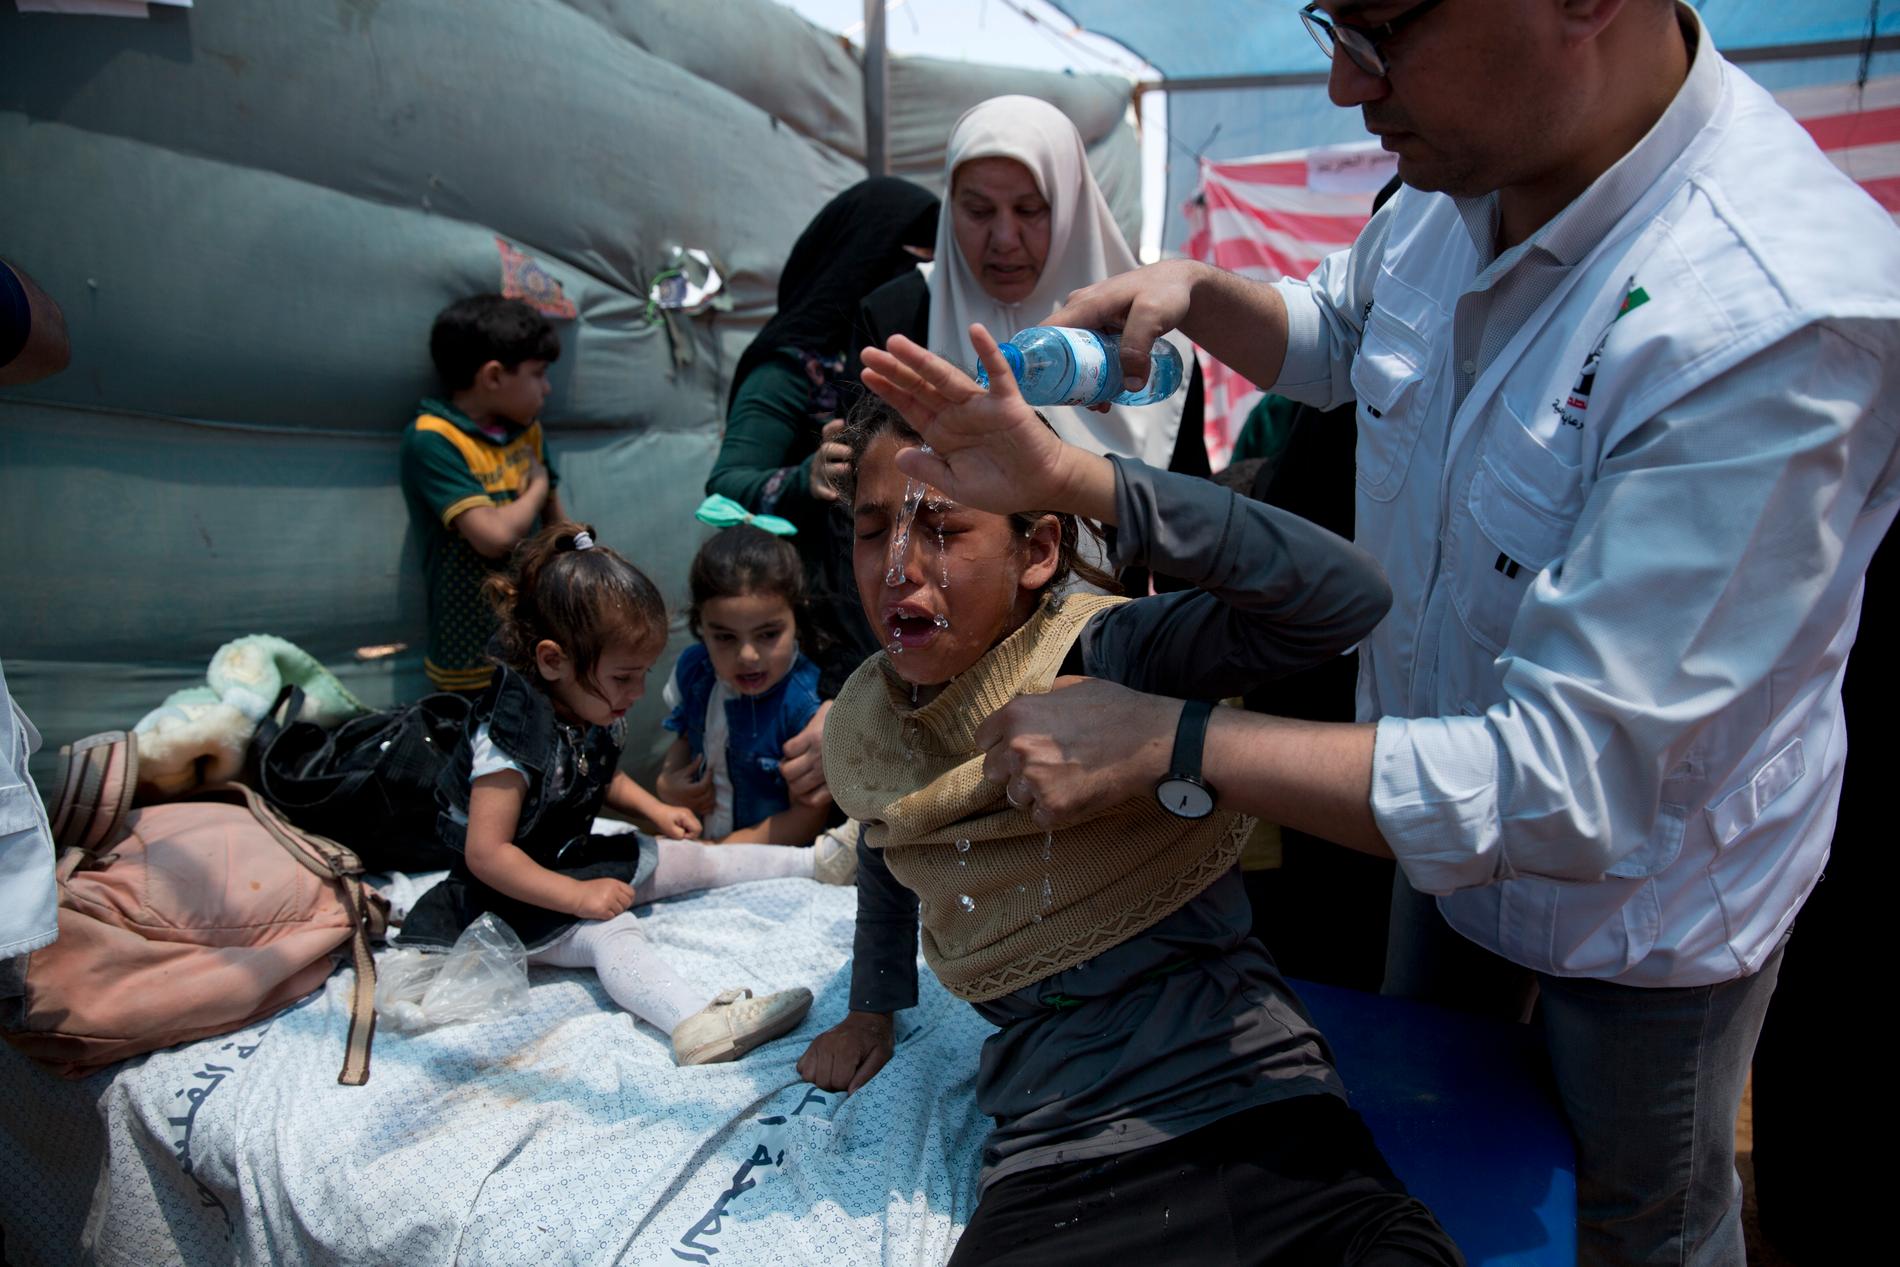 Vårdpersonal behandlar barn i Gazaremsan efter våldsamma sammandrabbningar mellan palestinska demonstranter och israelisk militär i maj i år. Arkivbild.